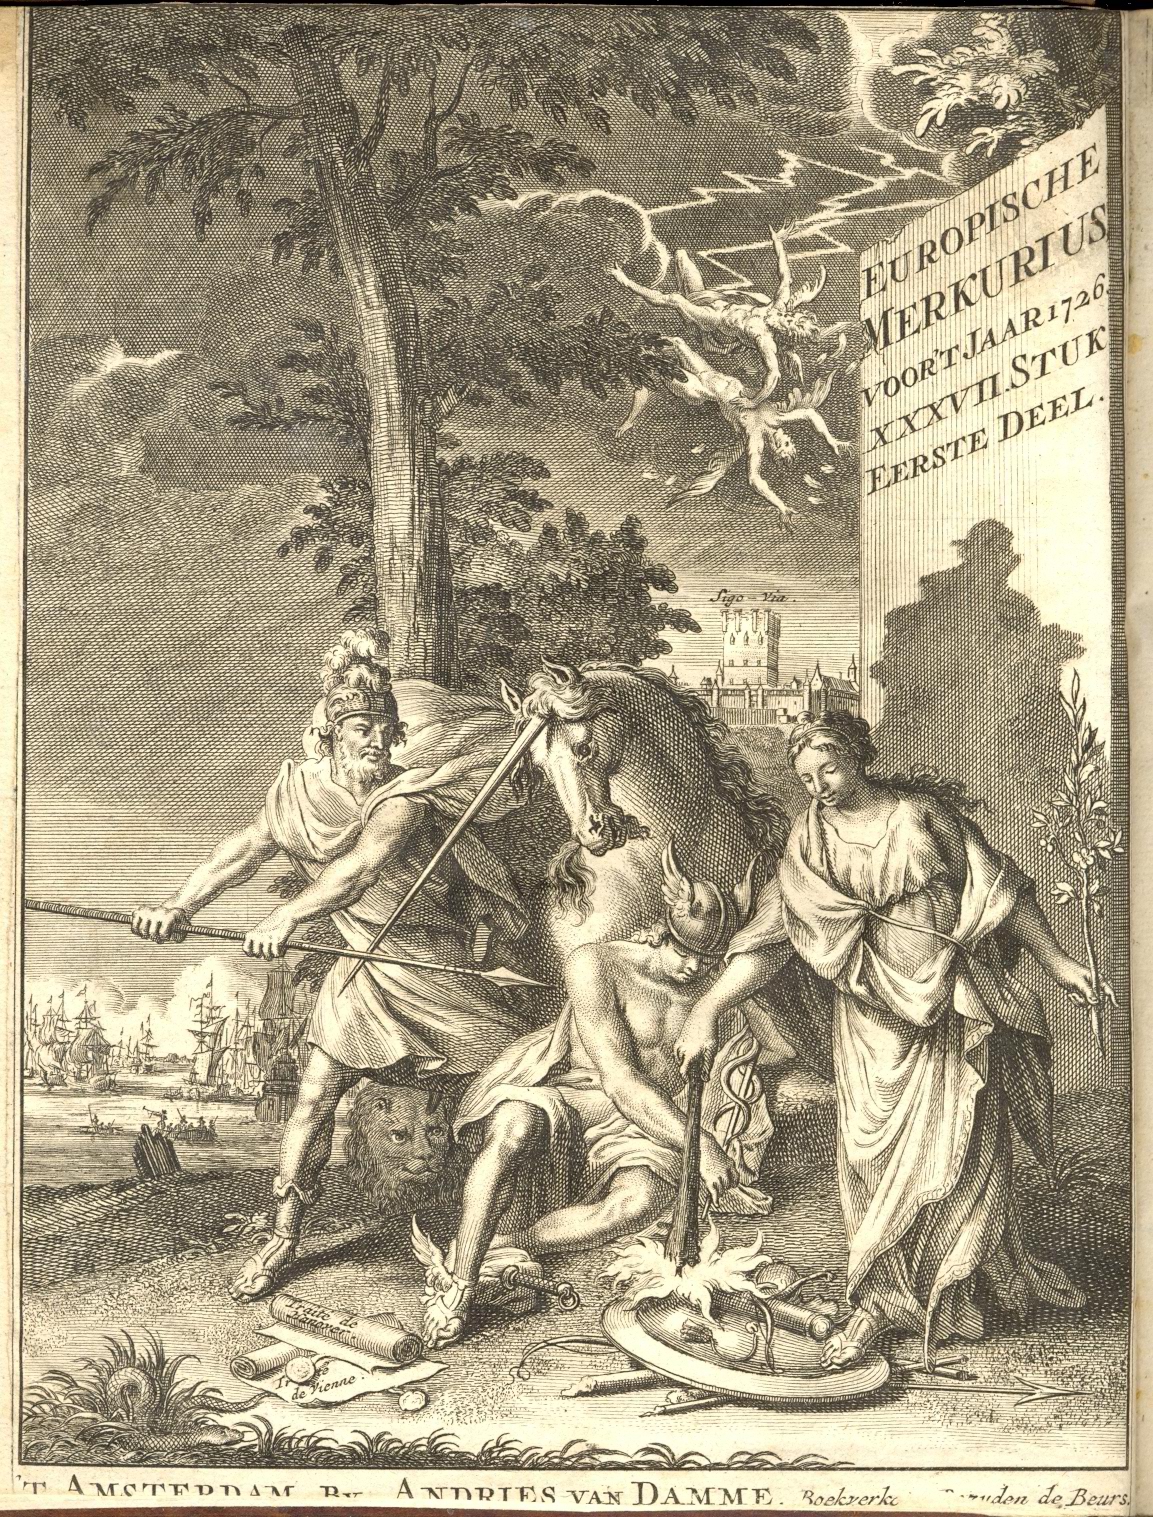 Europische Mercurius, 1726.